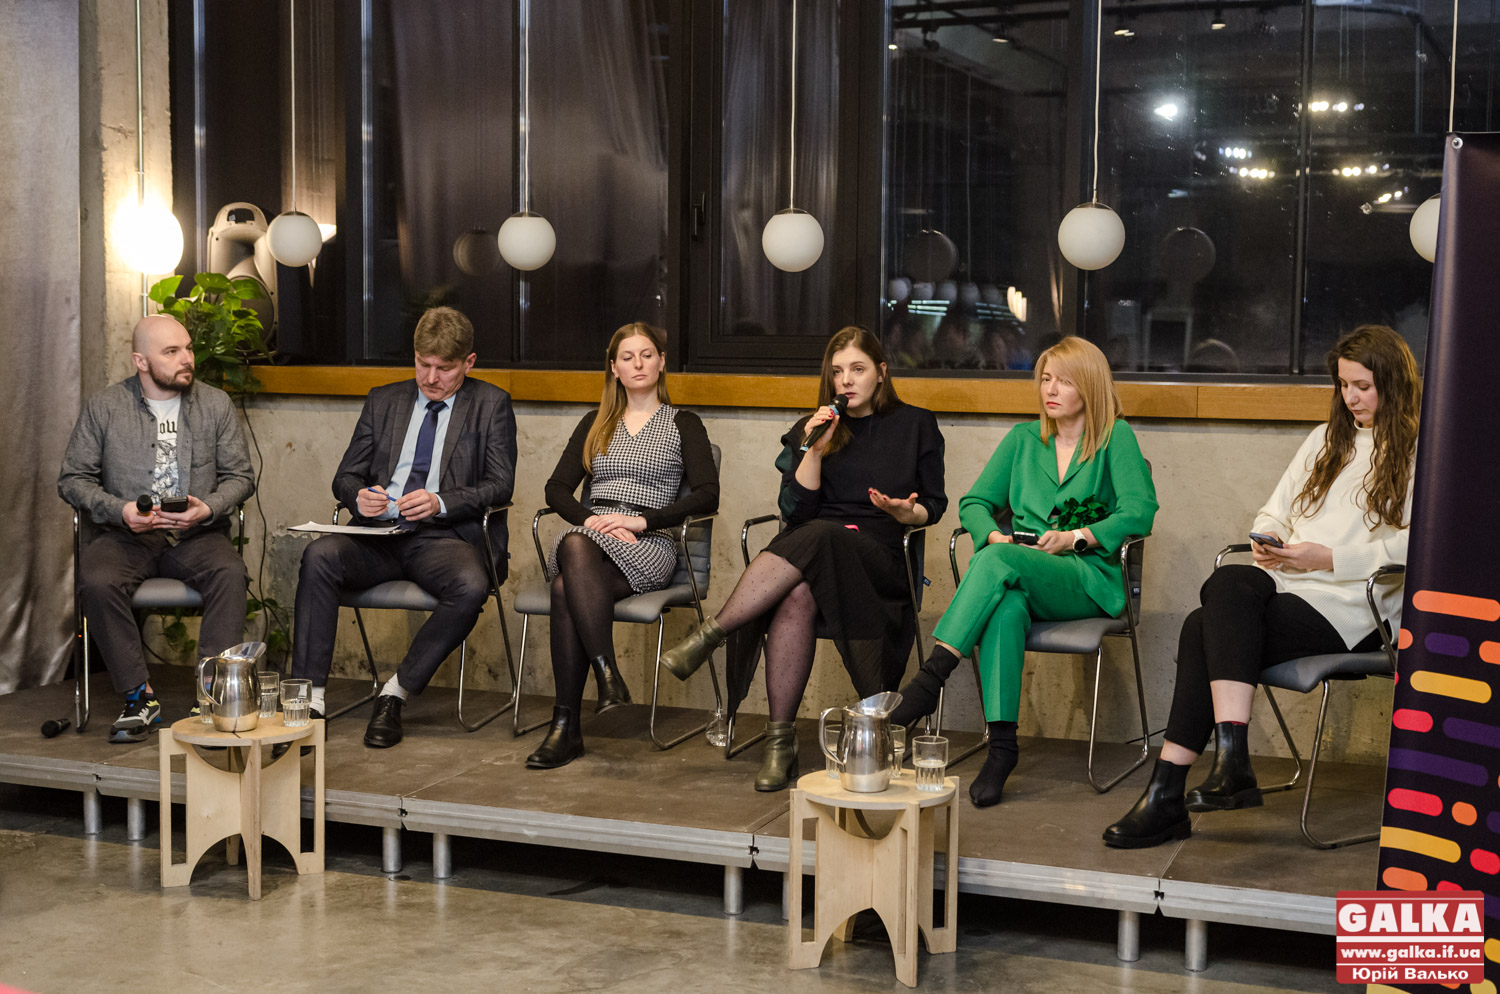 Про 8 березня, стереотипи та права: у Франківську дискутували про не/рівності жінок та чоловіків (ФОТО)